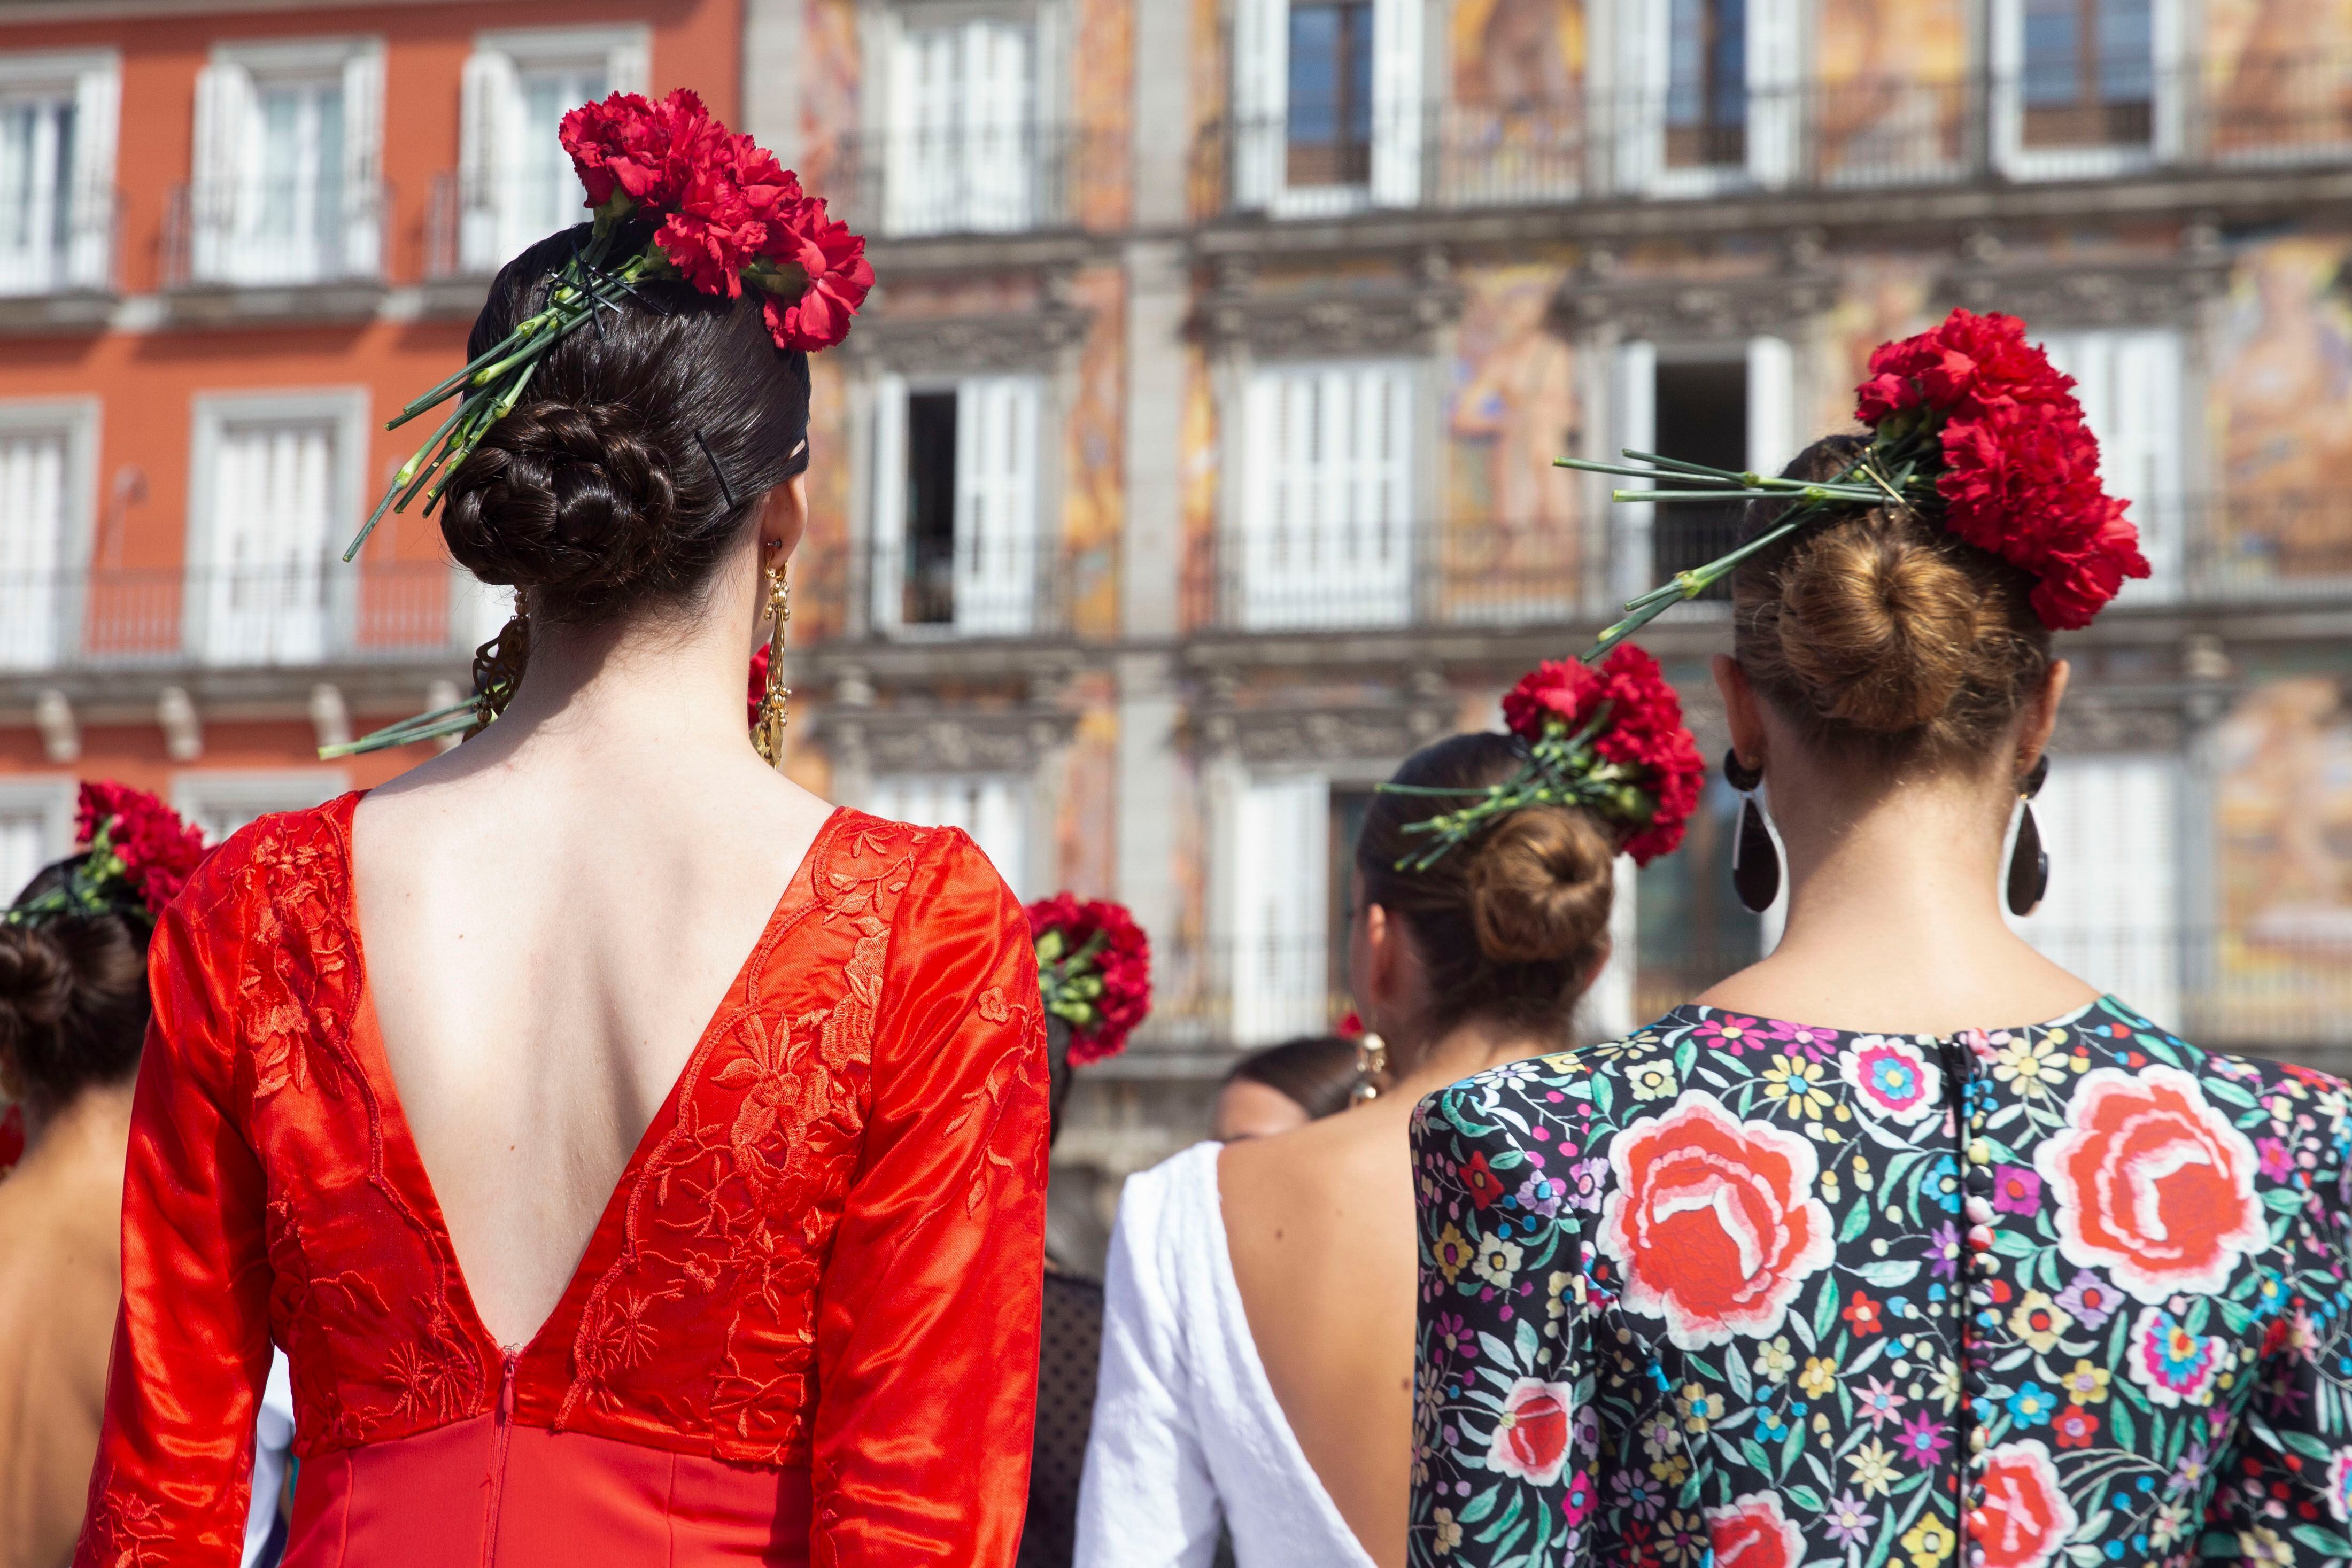 Varias modelos participan en un espectáculo en la plaza Mayor de Madrid, durante la presentación de la segunda edición de moda flamenca (SIMOF).